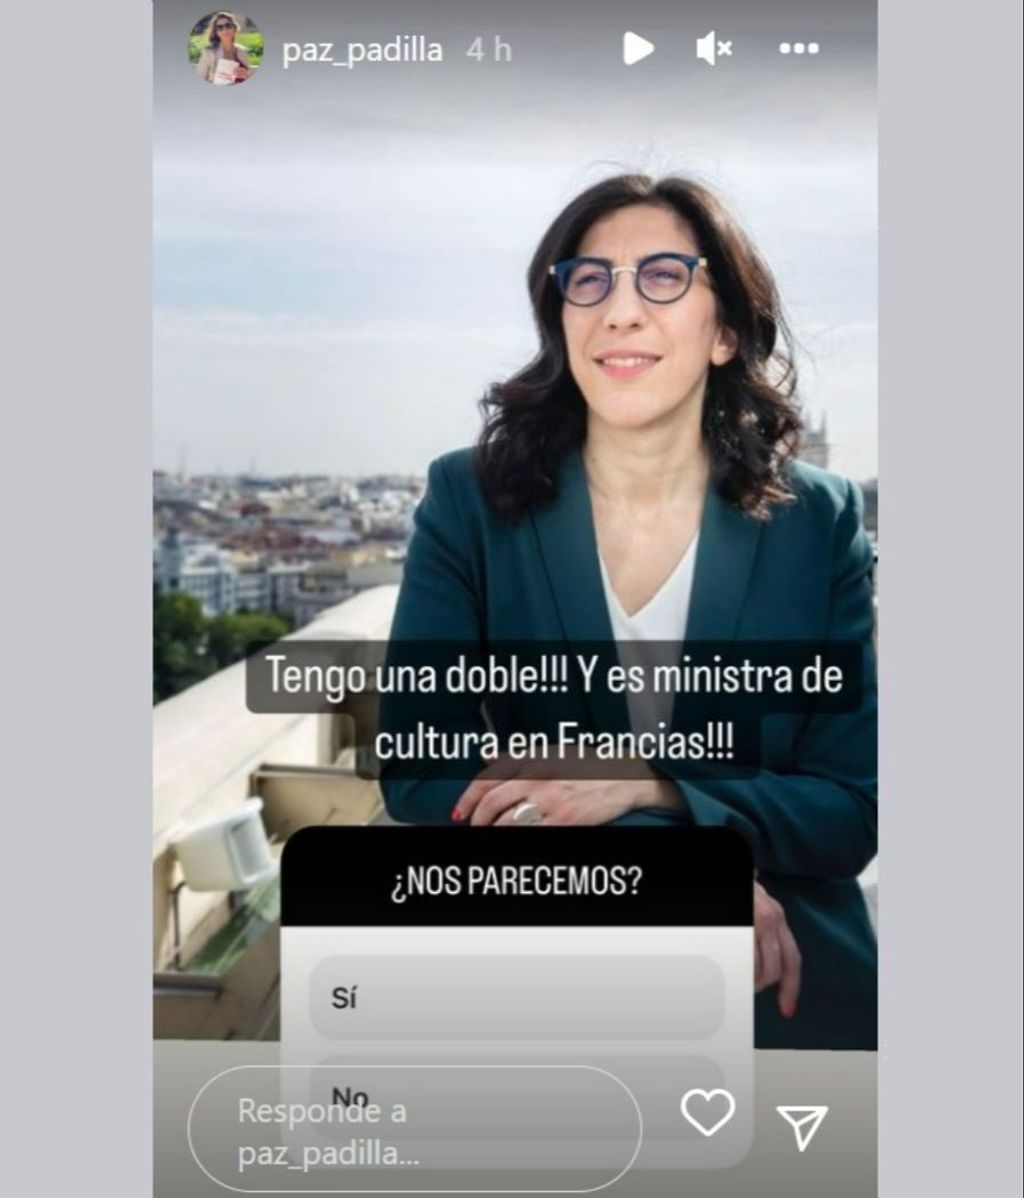 Paz Padilla reacciona a su asombroso parecido con la ministra de Cultura francesa